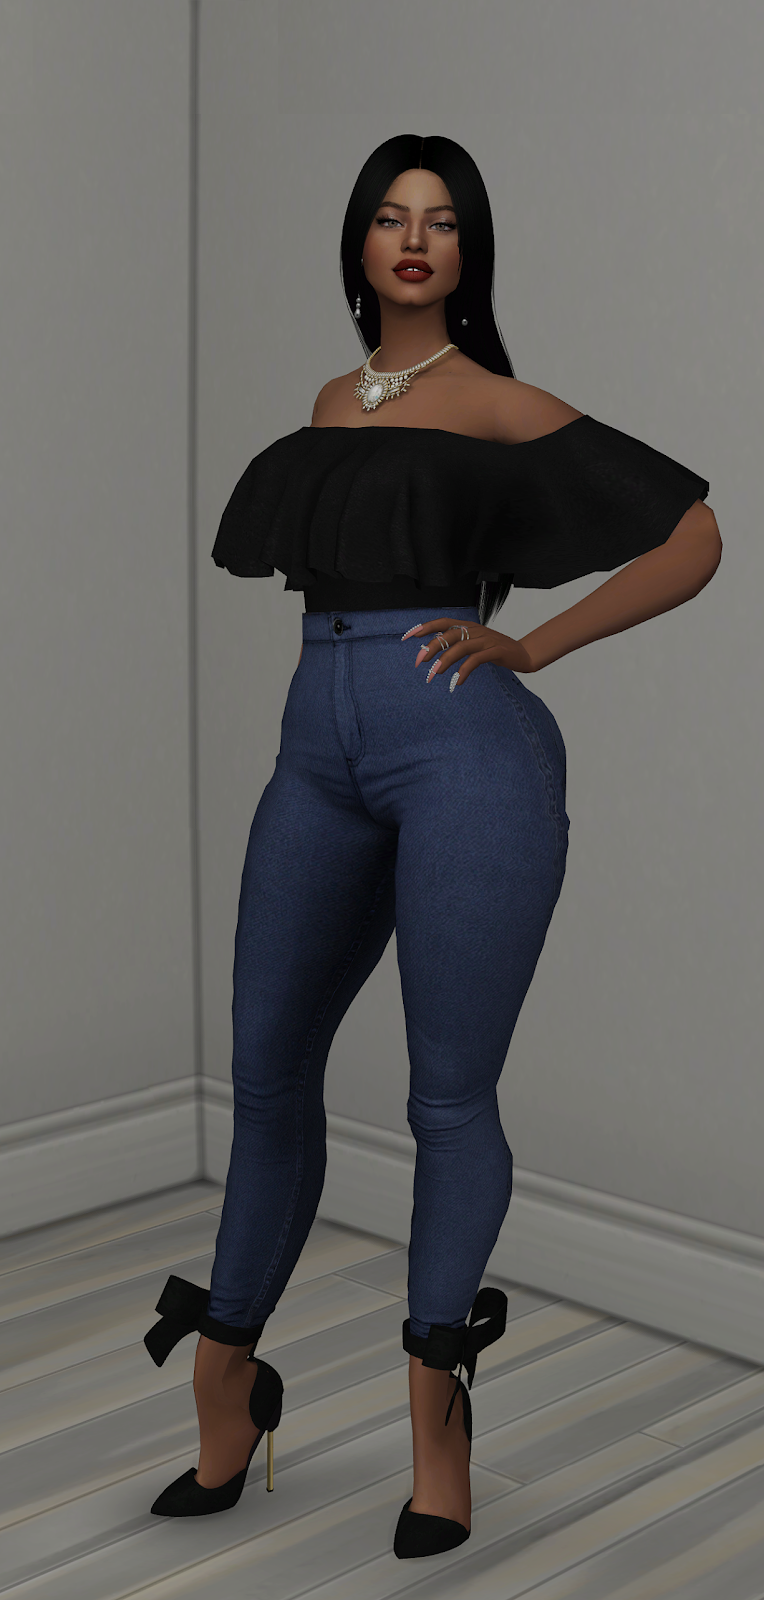 NG Sims 3: Long Dress 01 - TS4 Clothes